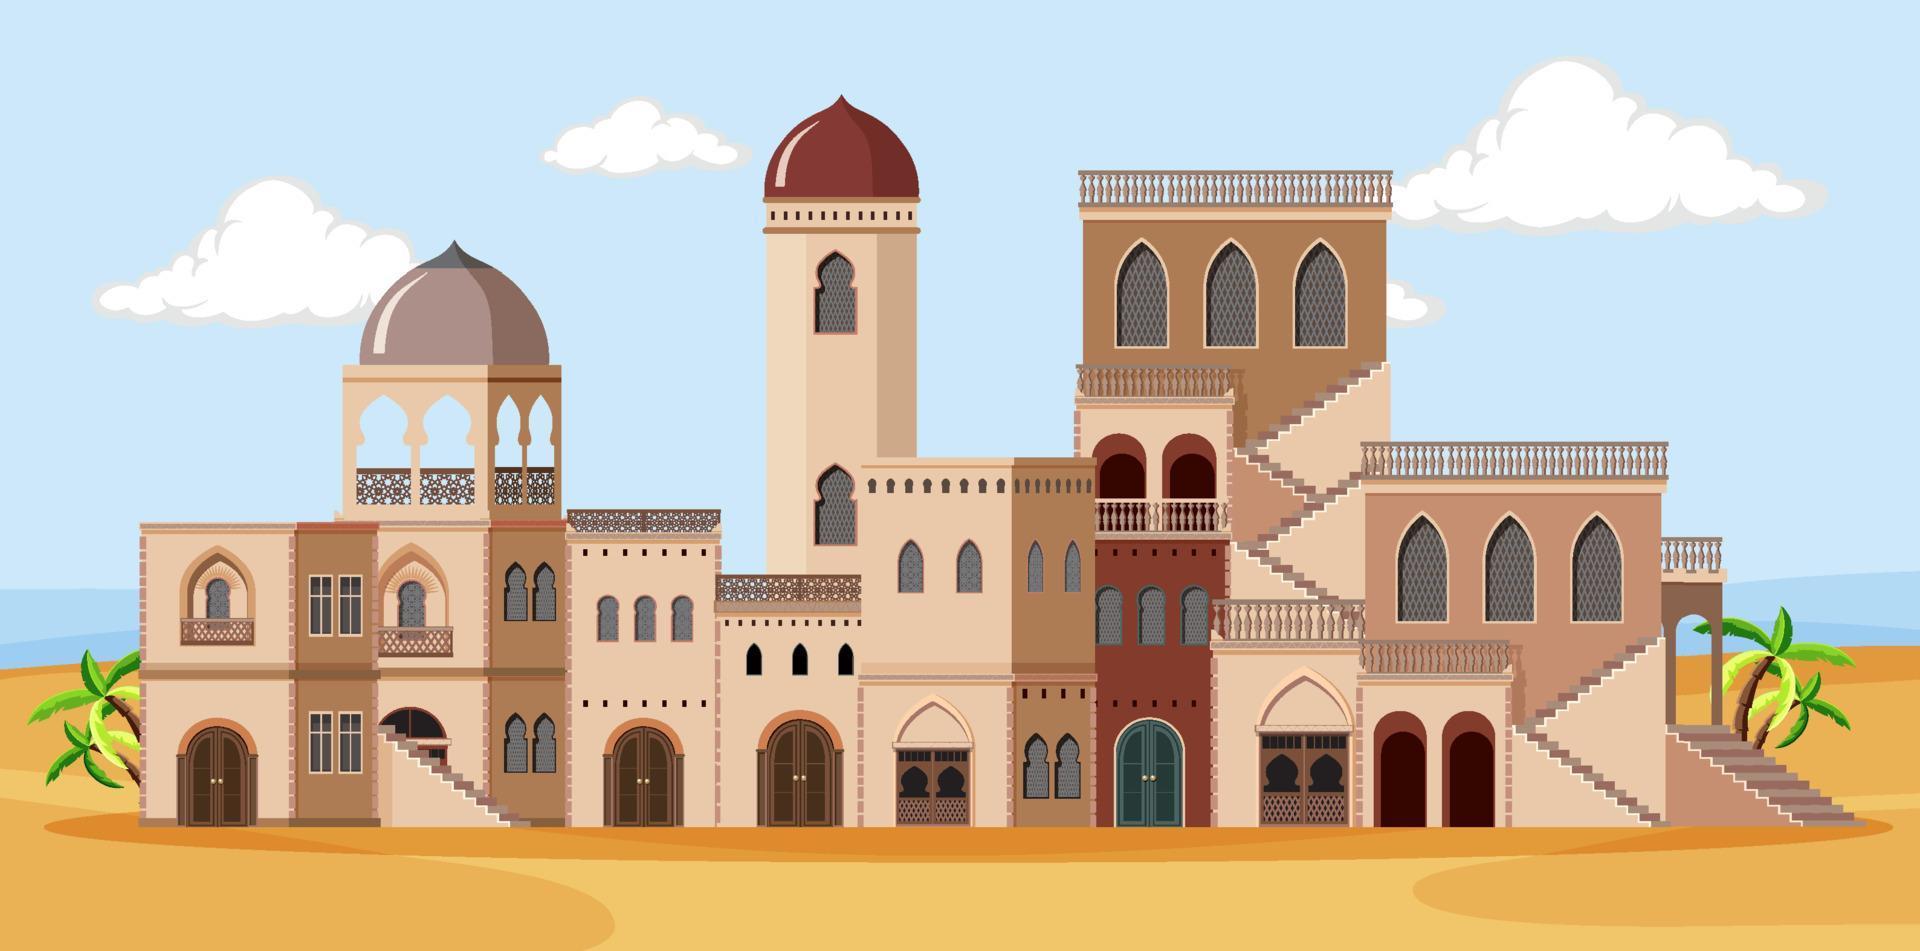 Scene with brown buildings in desert vector